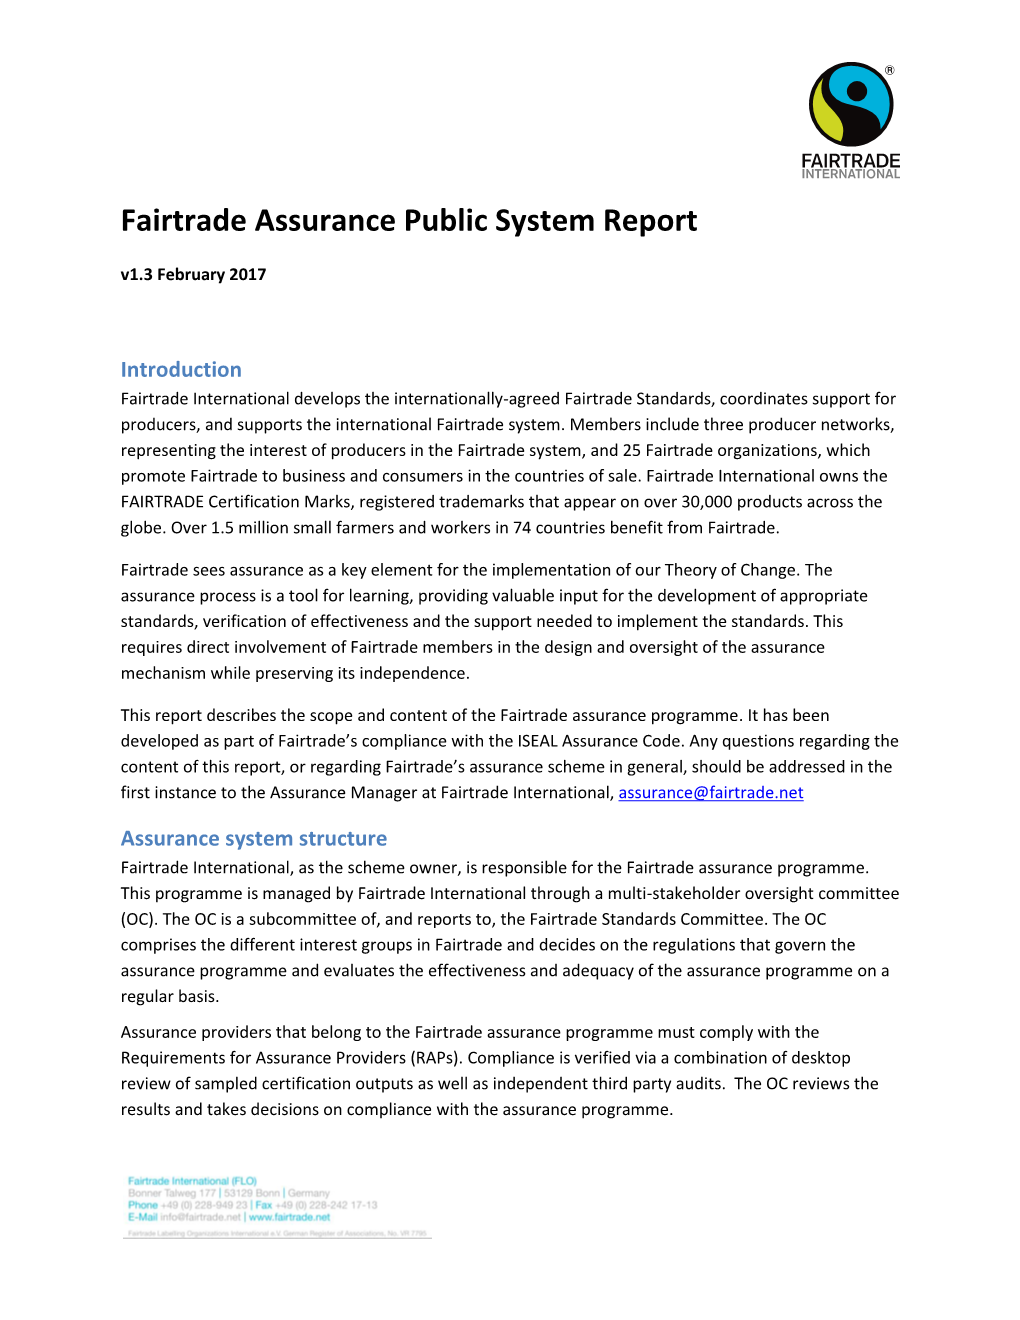 Fairtrade Assurance Public System Report V1.3 February 2017